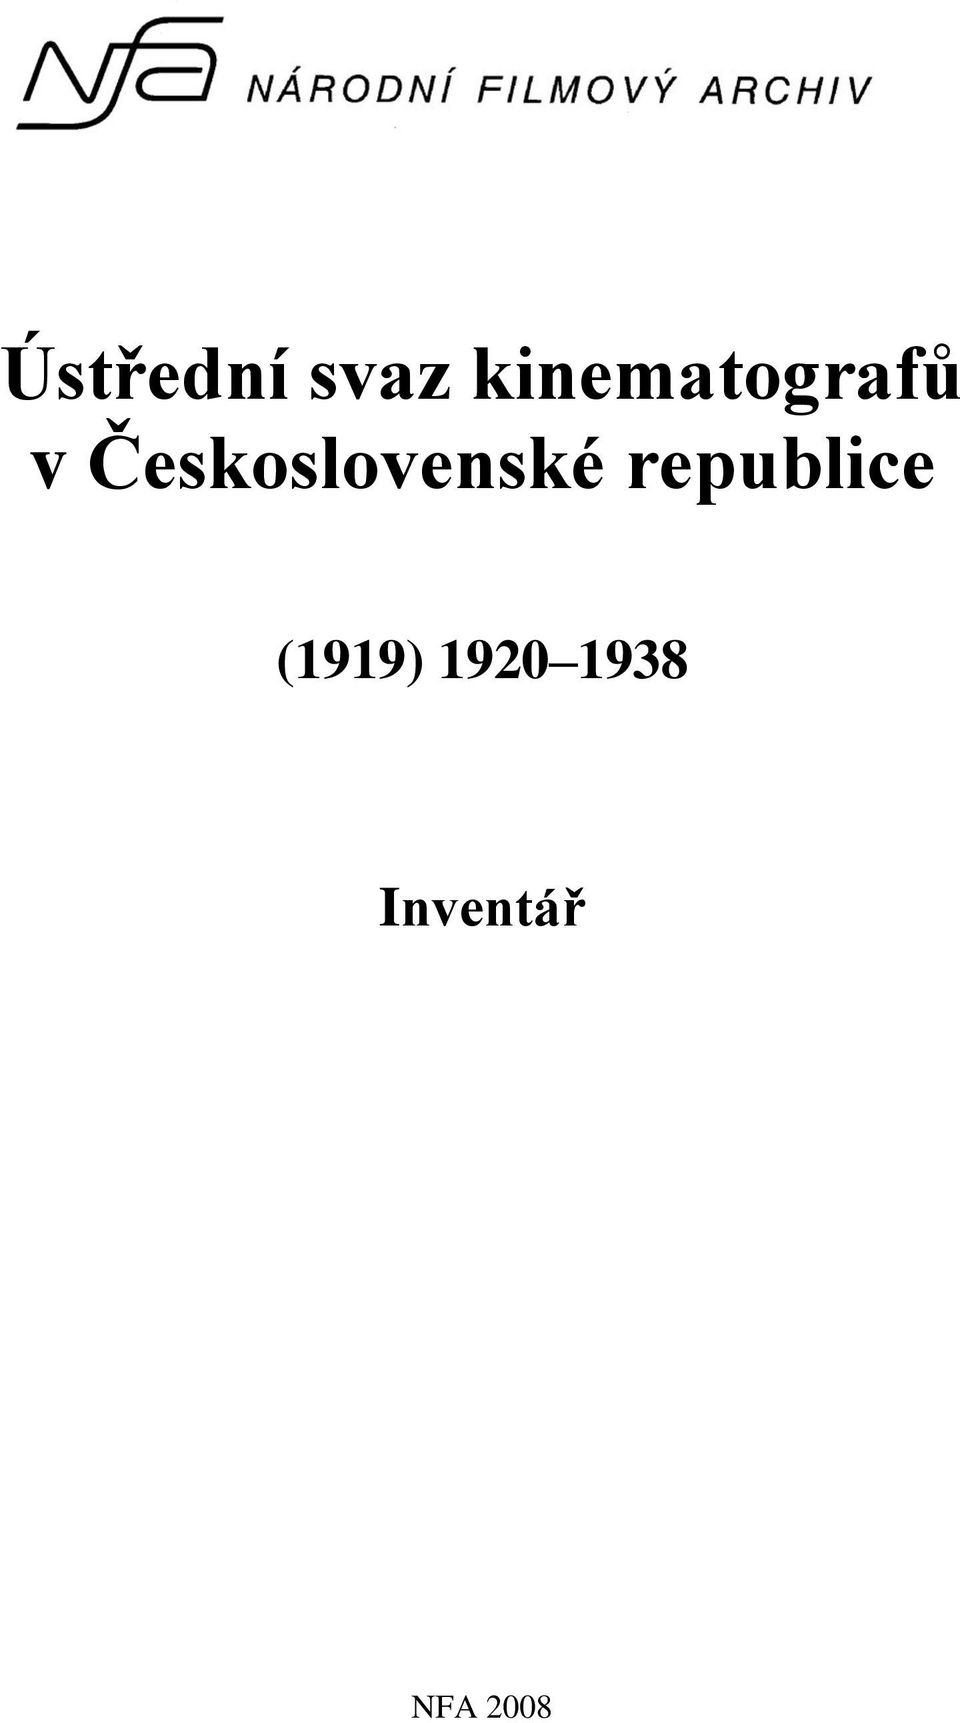 Československé